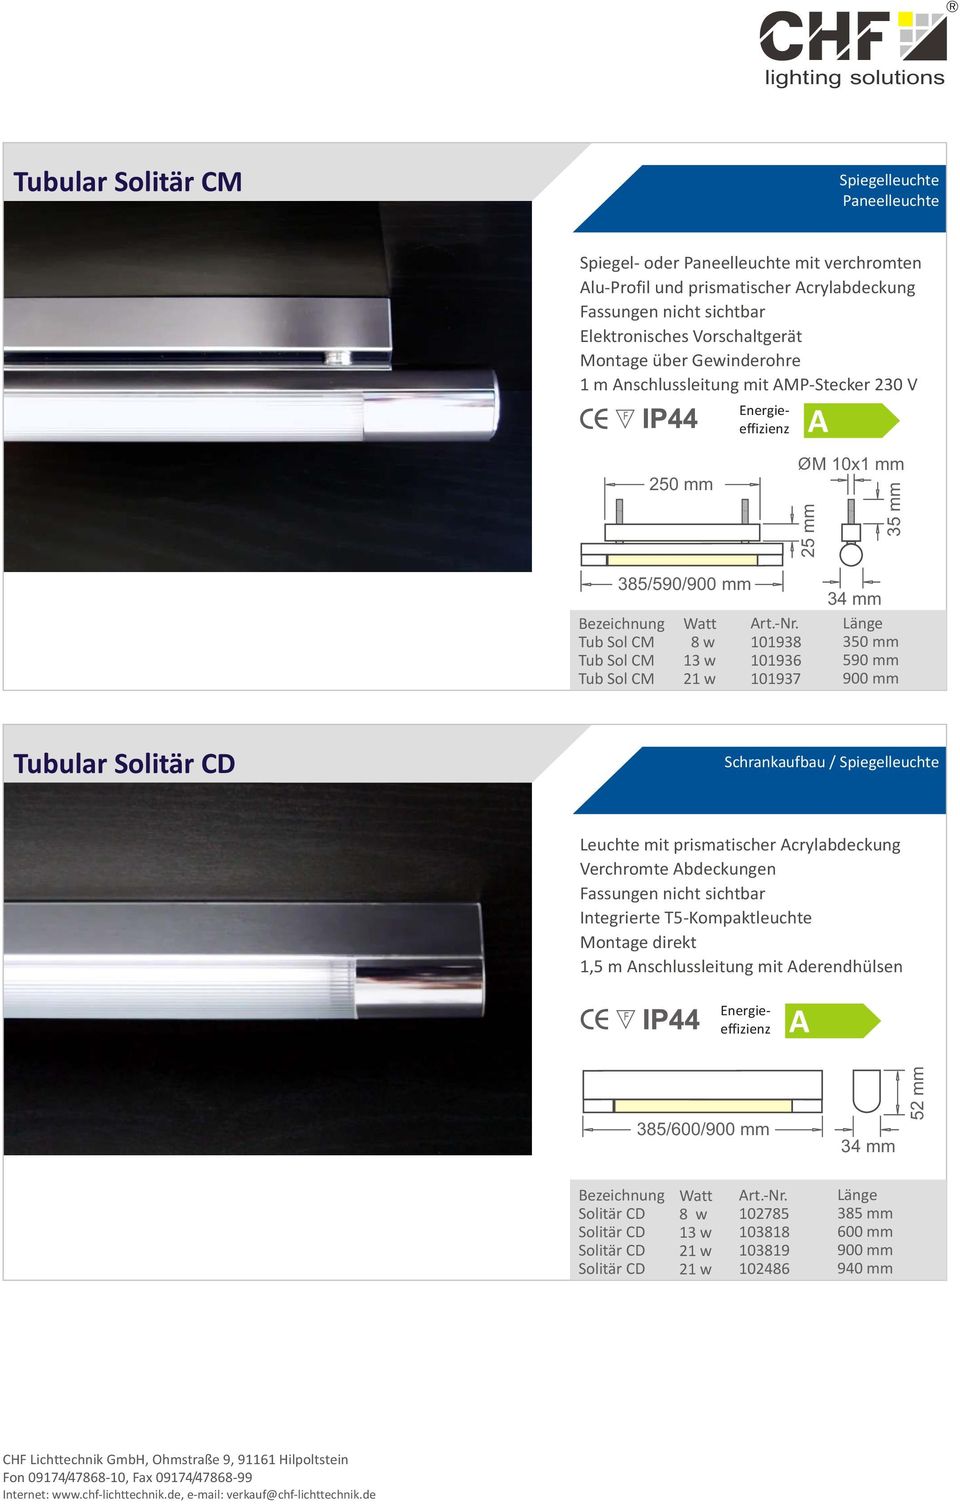 mm 590 mm 900 mm Tubular Solitär CD Schrankaufbau / Spiegelleuchte Leuchte mit prismatischer crylabdeckung Verchromte bdeckungen Fassungen nicht sichtbar Integrierte T5-Kompaktleuchte